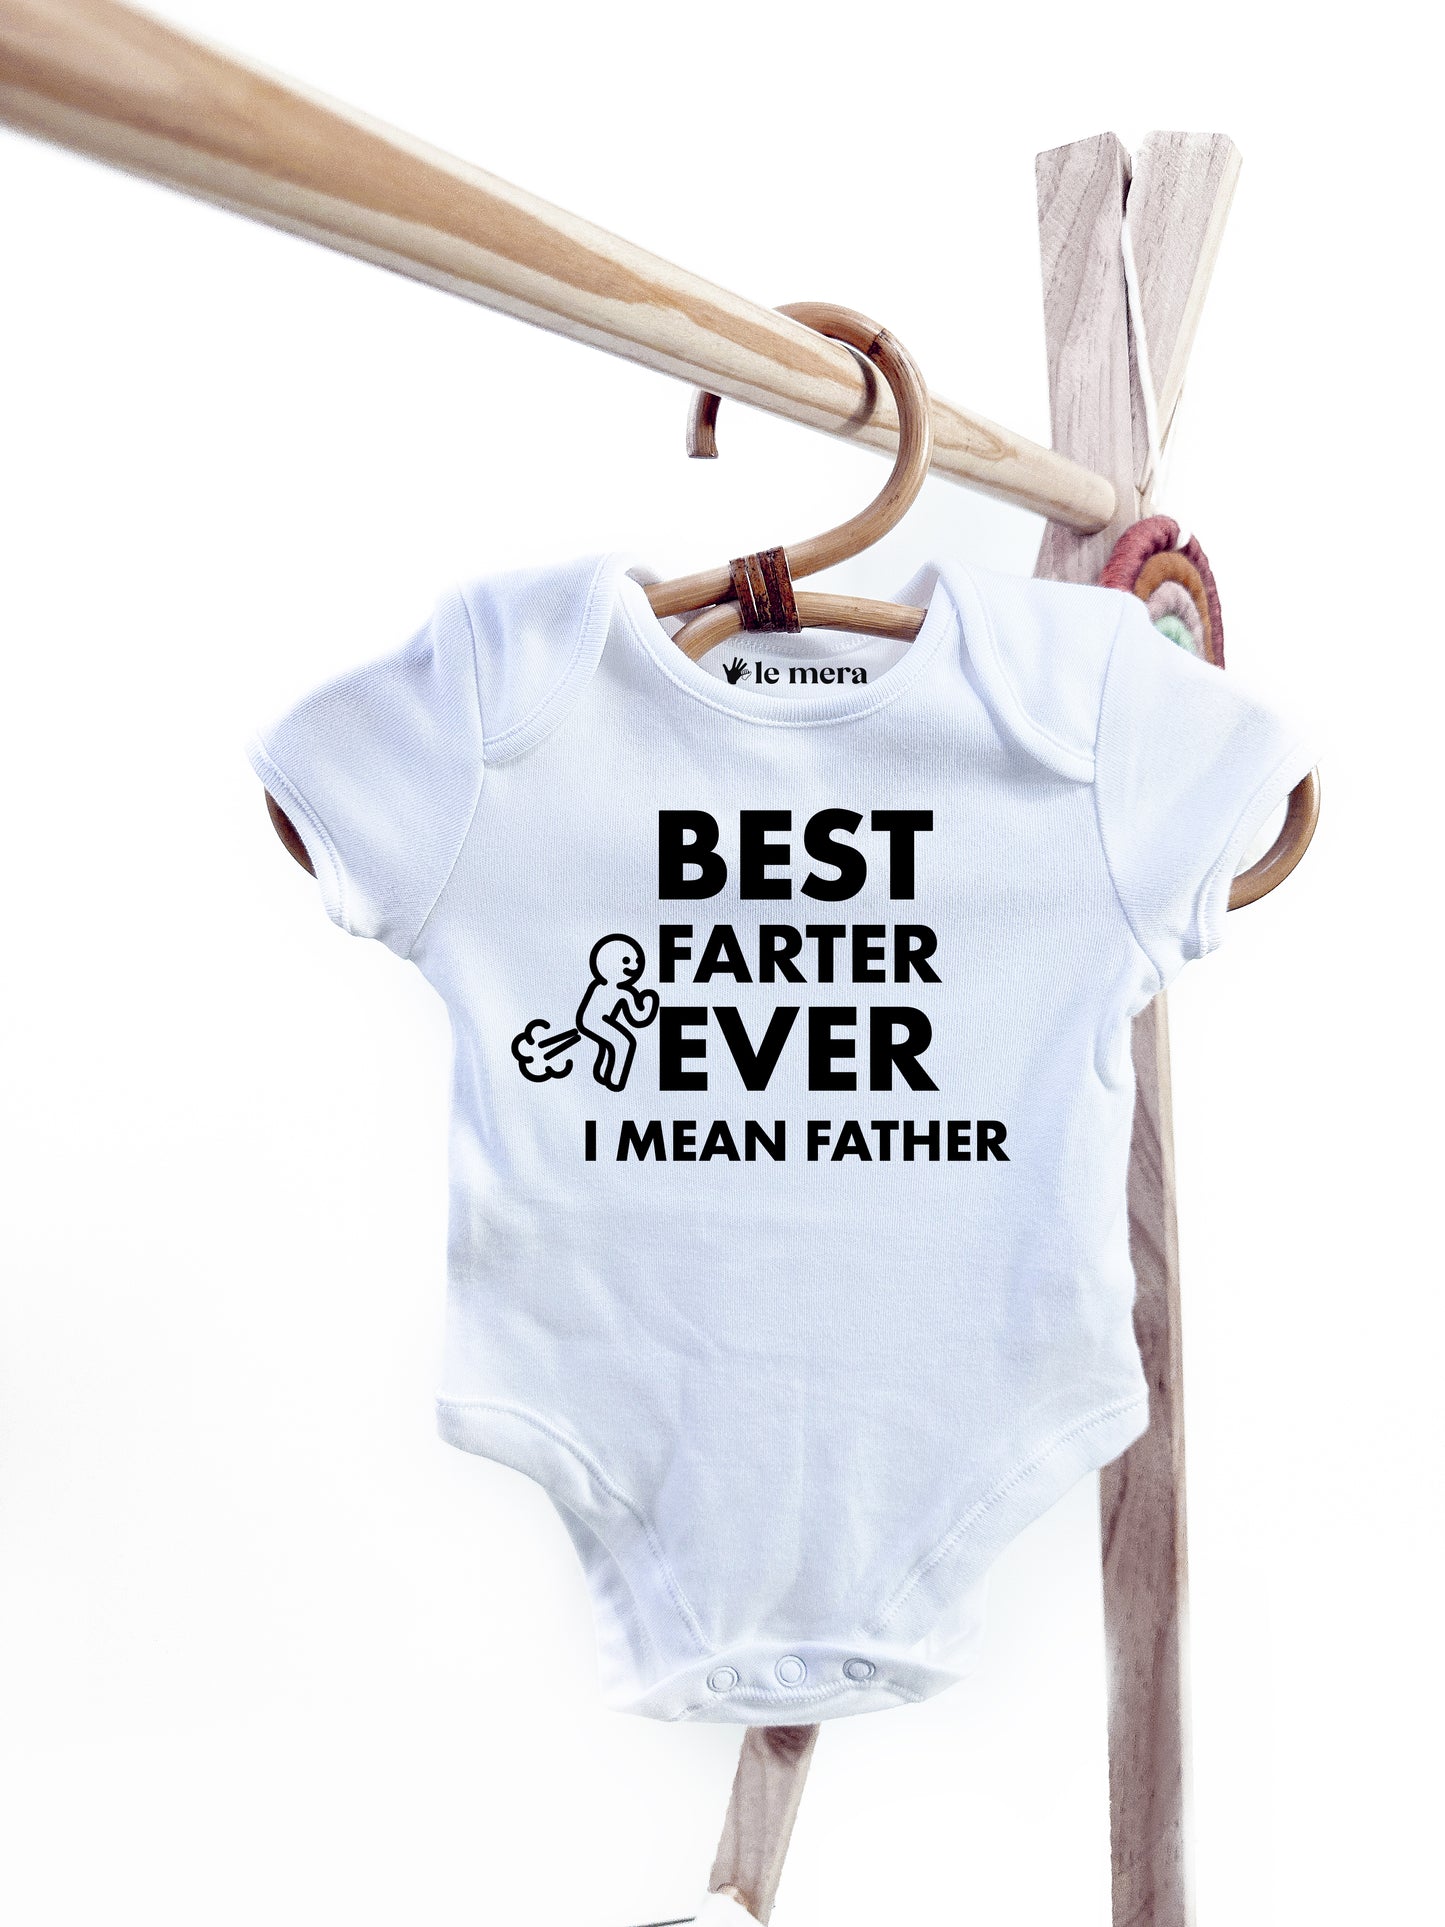 Best Farter Ever Baby Vest, Baby Grow, Best Dad